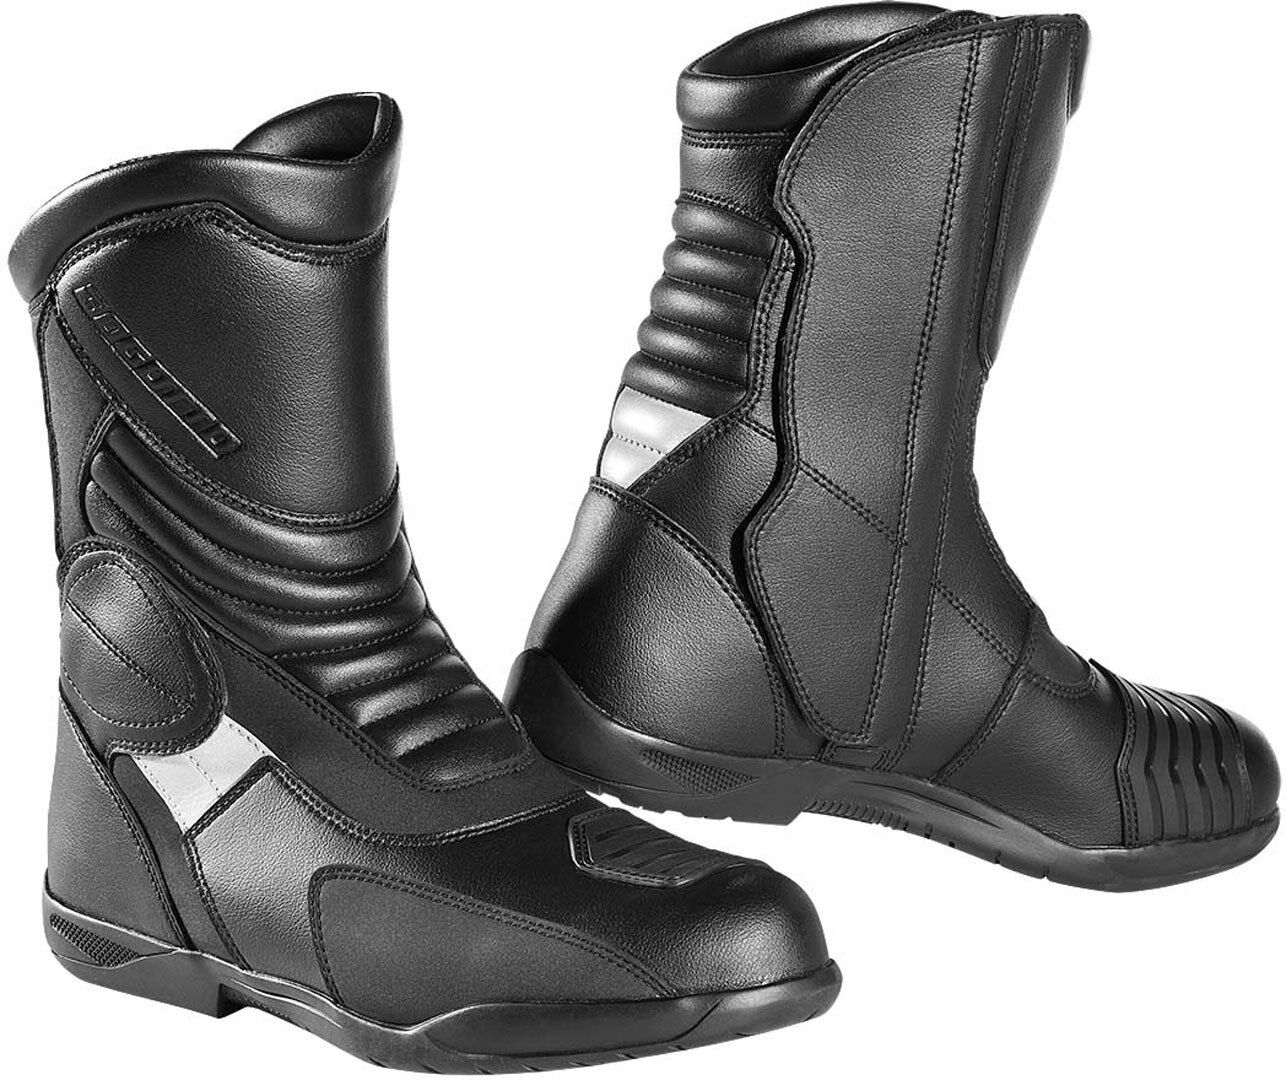 Bogotto Andamos botas de moto impermeables - Negro (48)